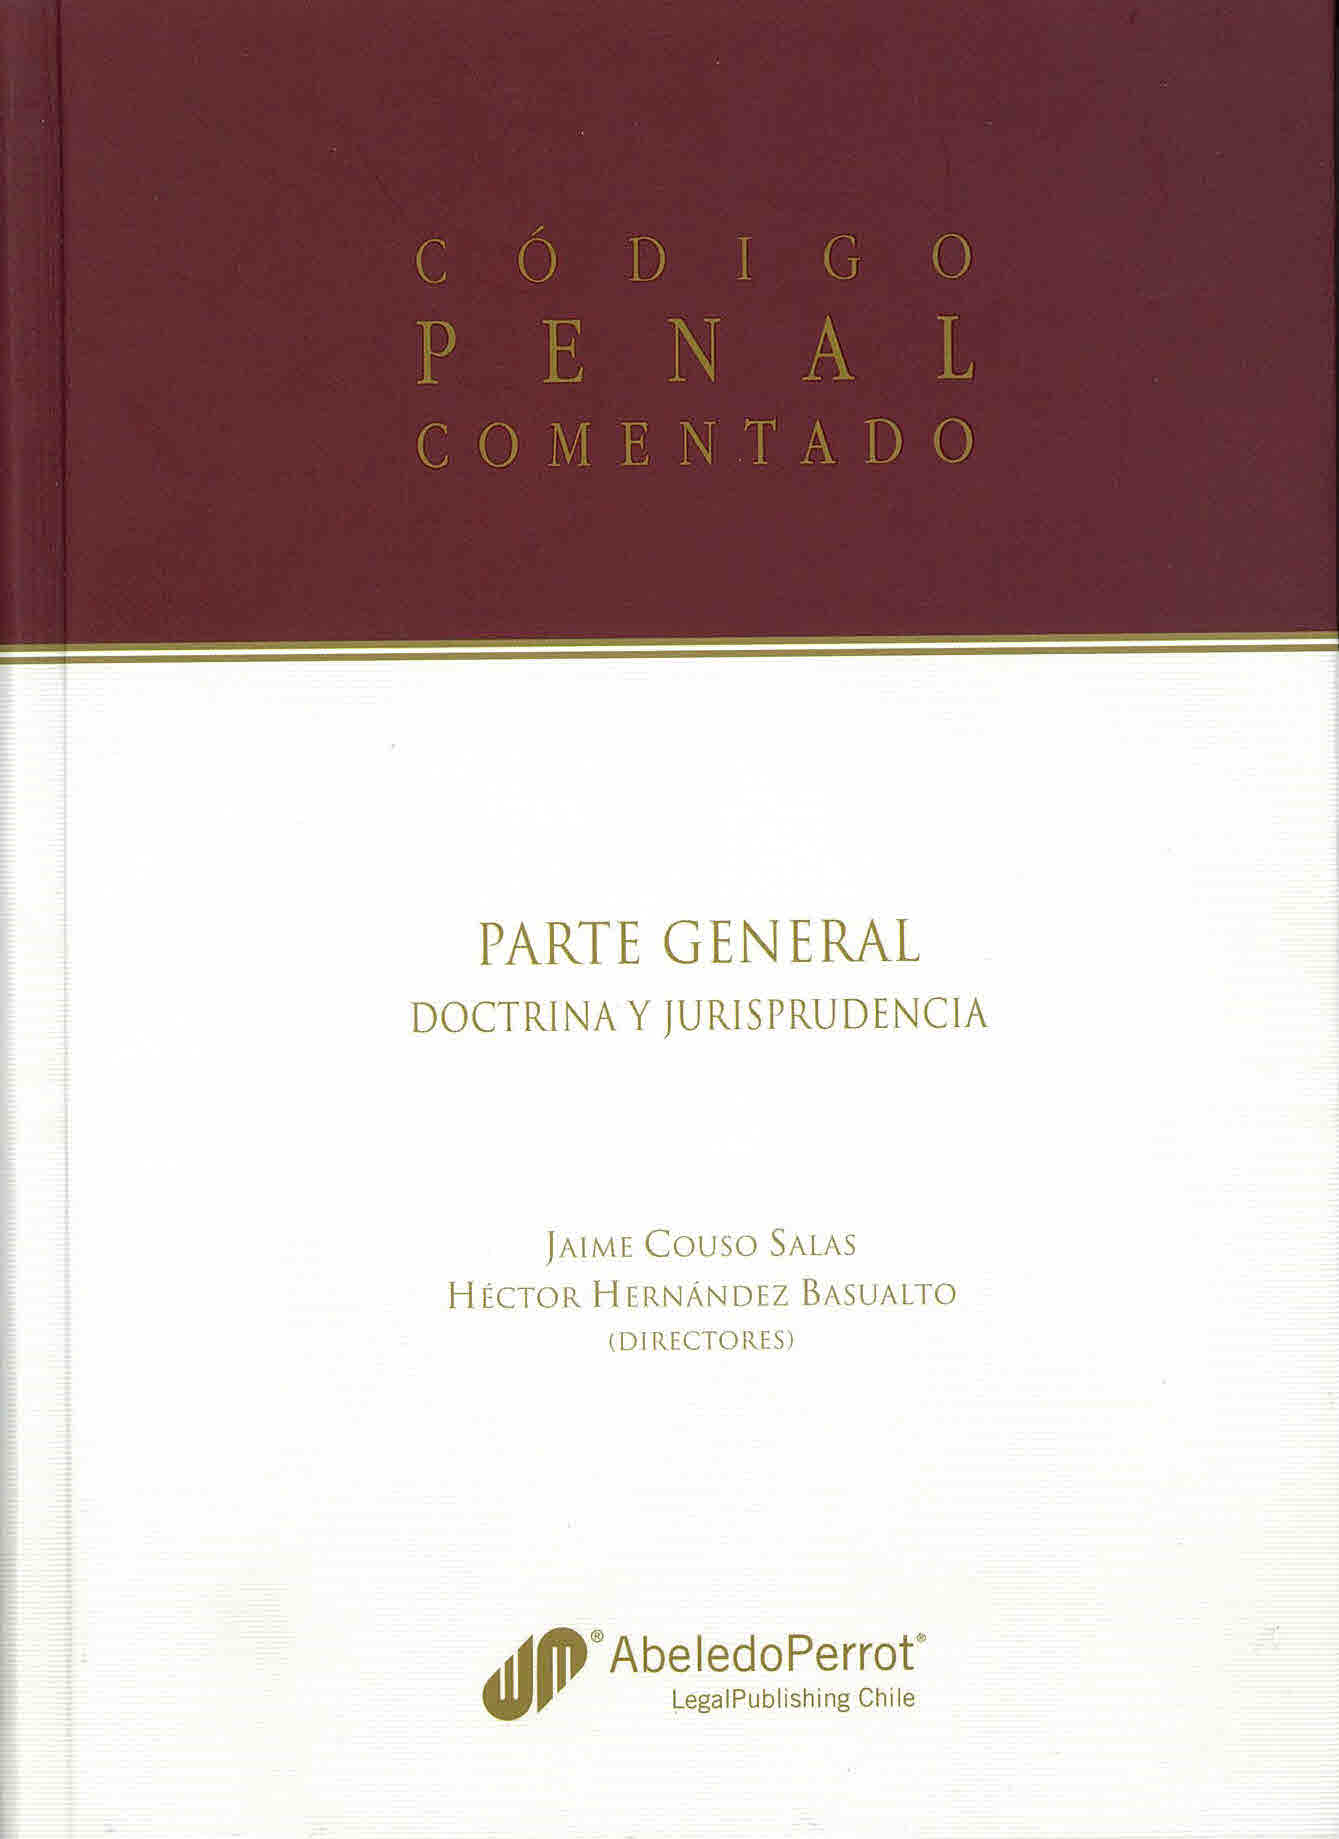 Código penal comentado. Parte general doctrina y jurisprudencia